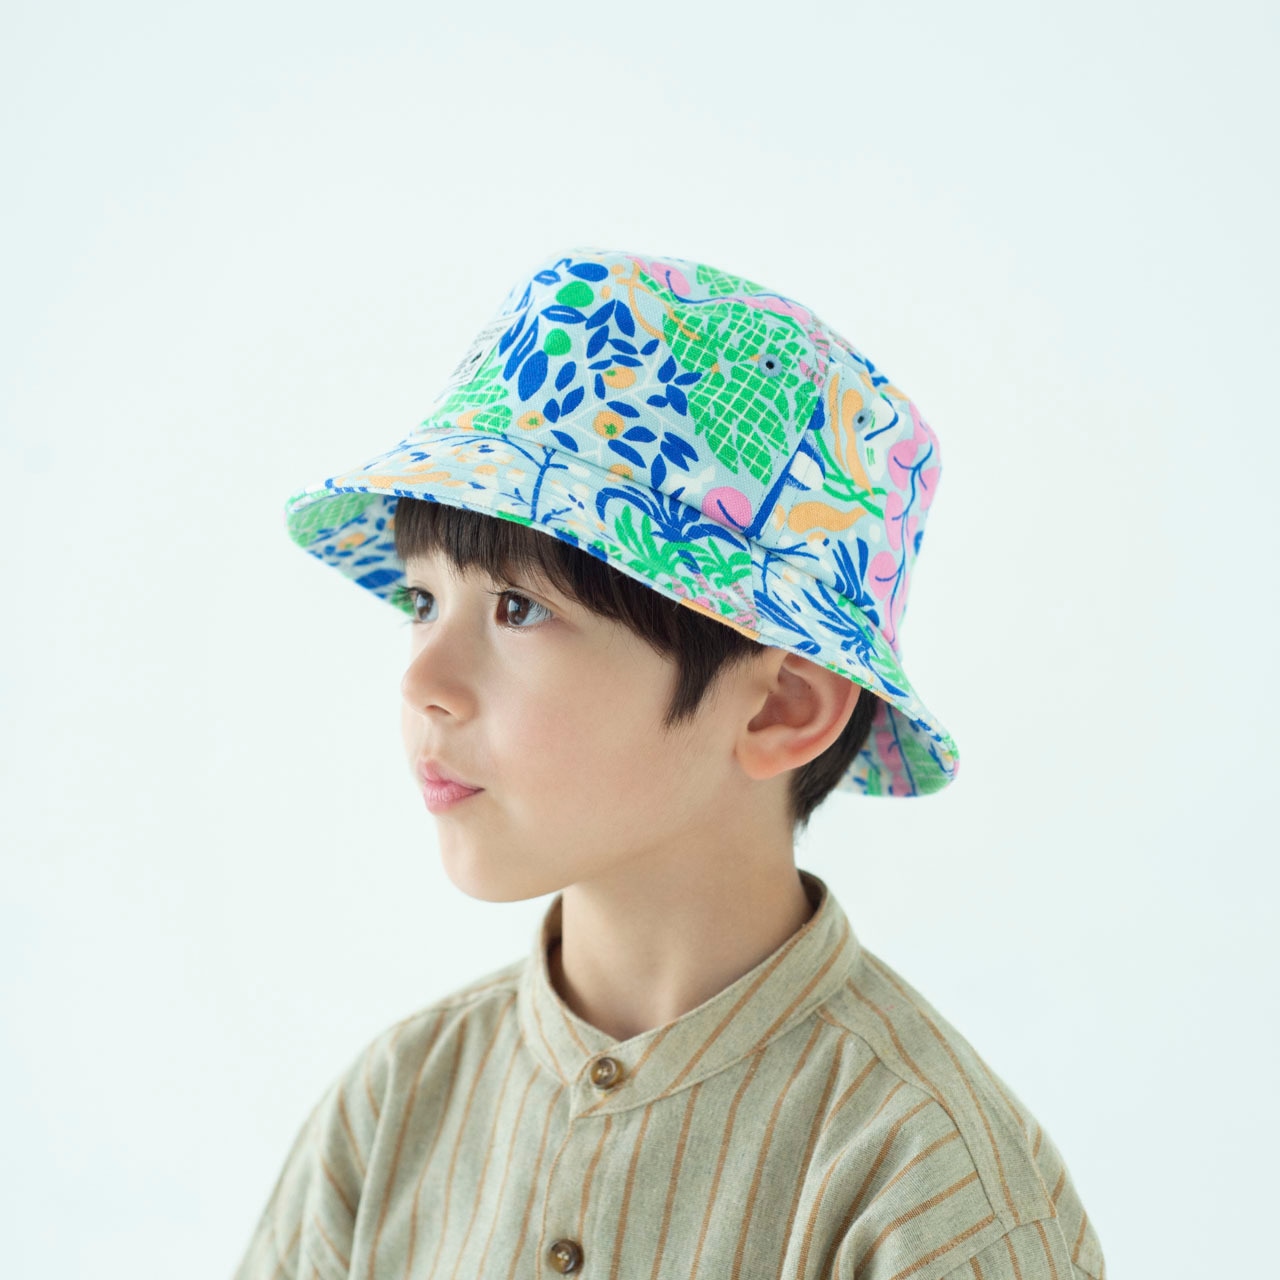 バケットハット【ウォーターブルー】54cm ブランド 子供帽子  ベビー帽子 キッズハット キッズキャップ 紫外線対策 日本製 出産祝い